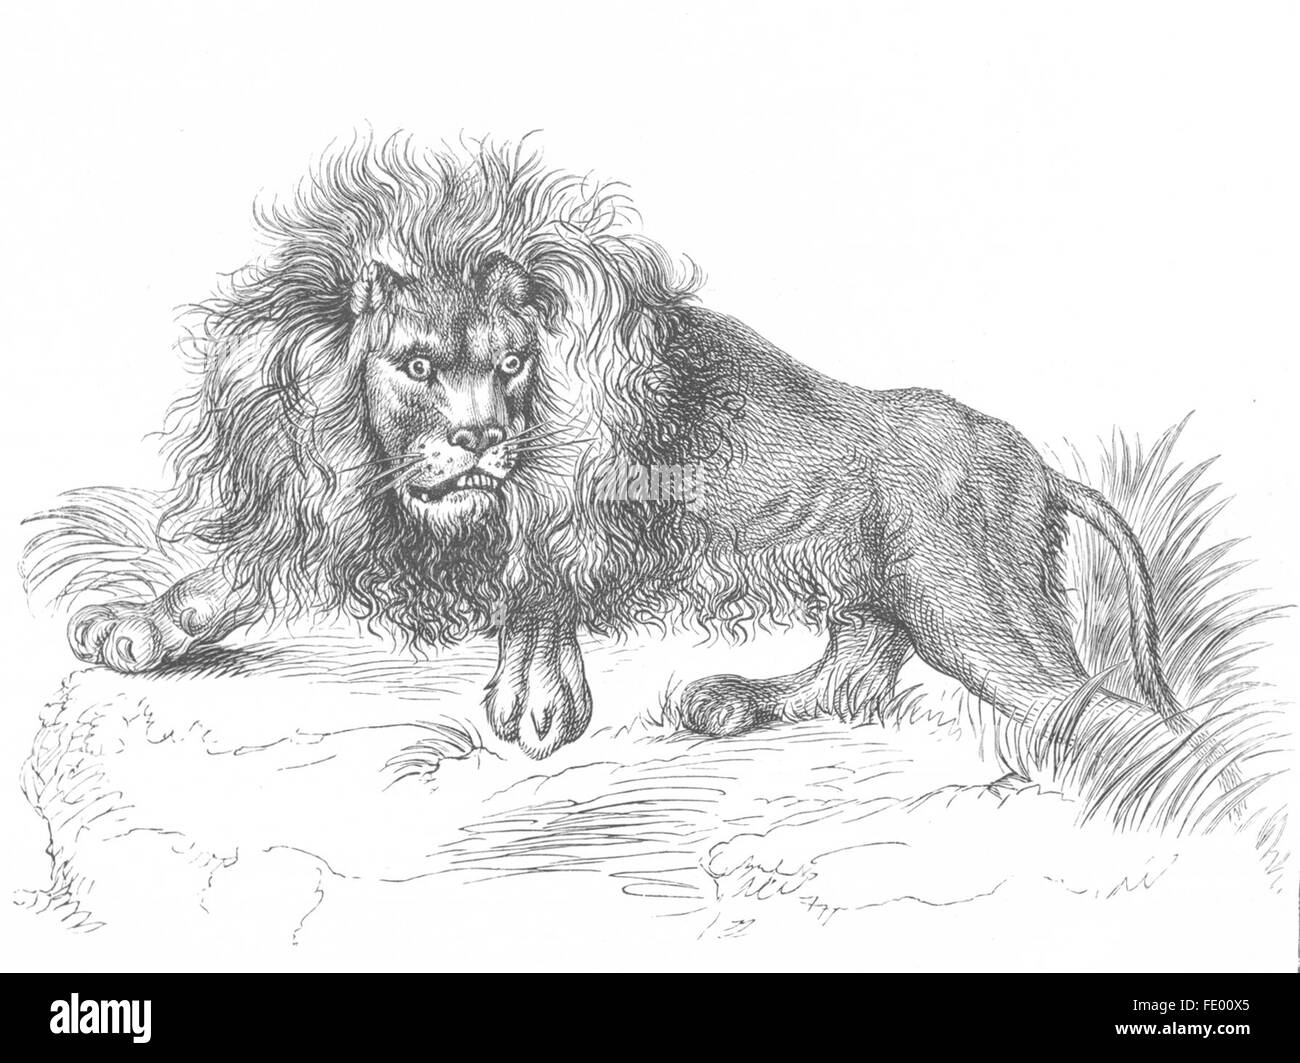 Leones: En la selva(León)-Landseer, grabado antiguo c1880 Foto de stock